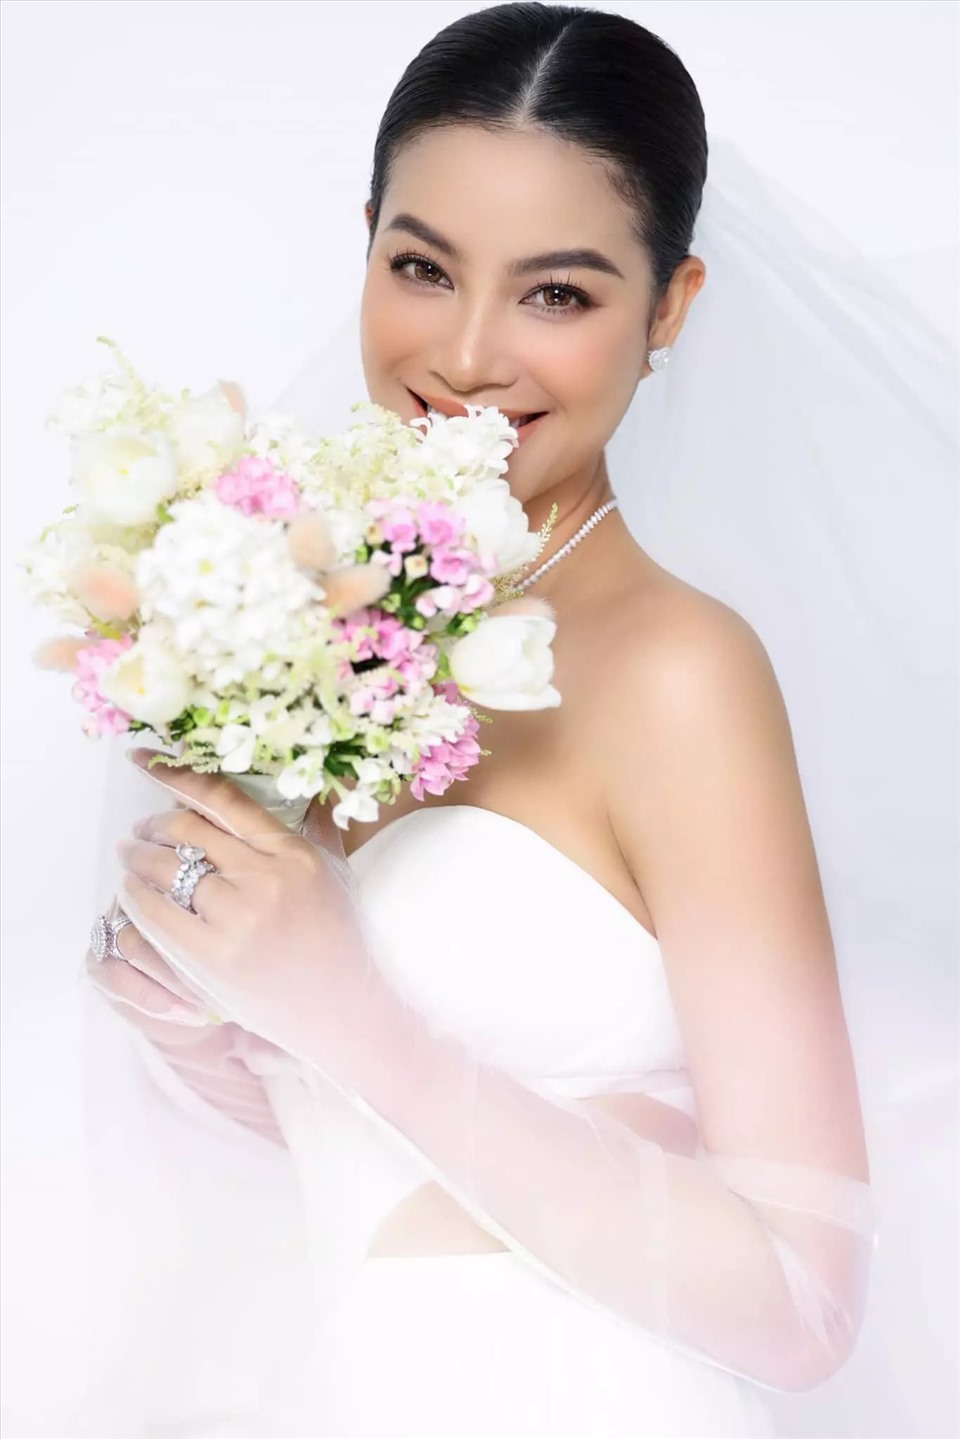 Hoa hậu Phạm Hương rạng rỡ trong bộ hình cưới thực hiện gần đây. Ảnh: NVCC